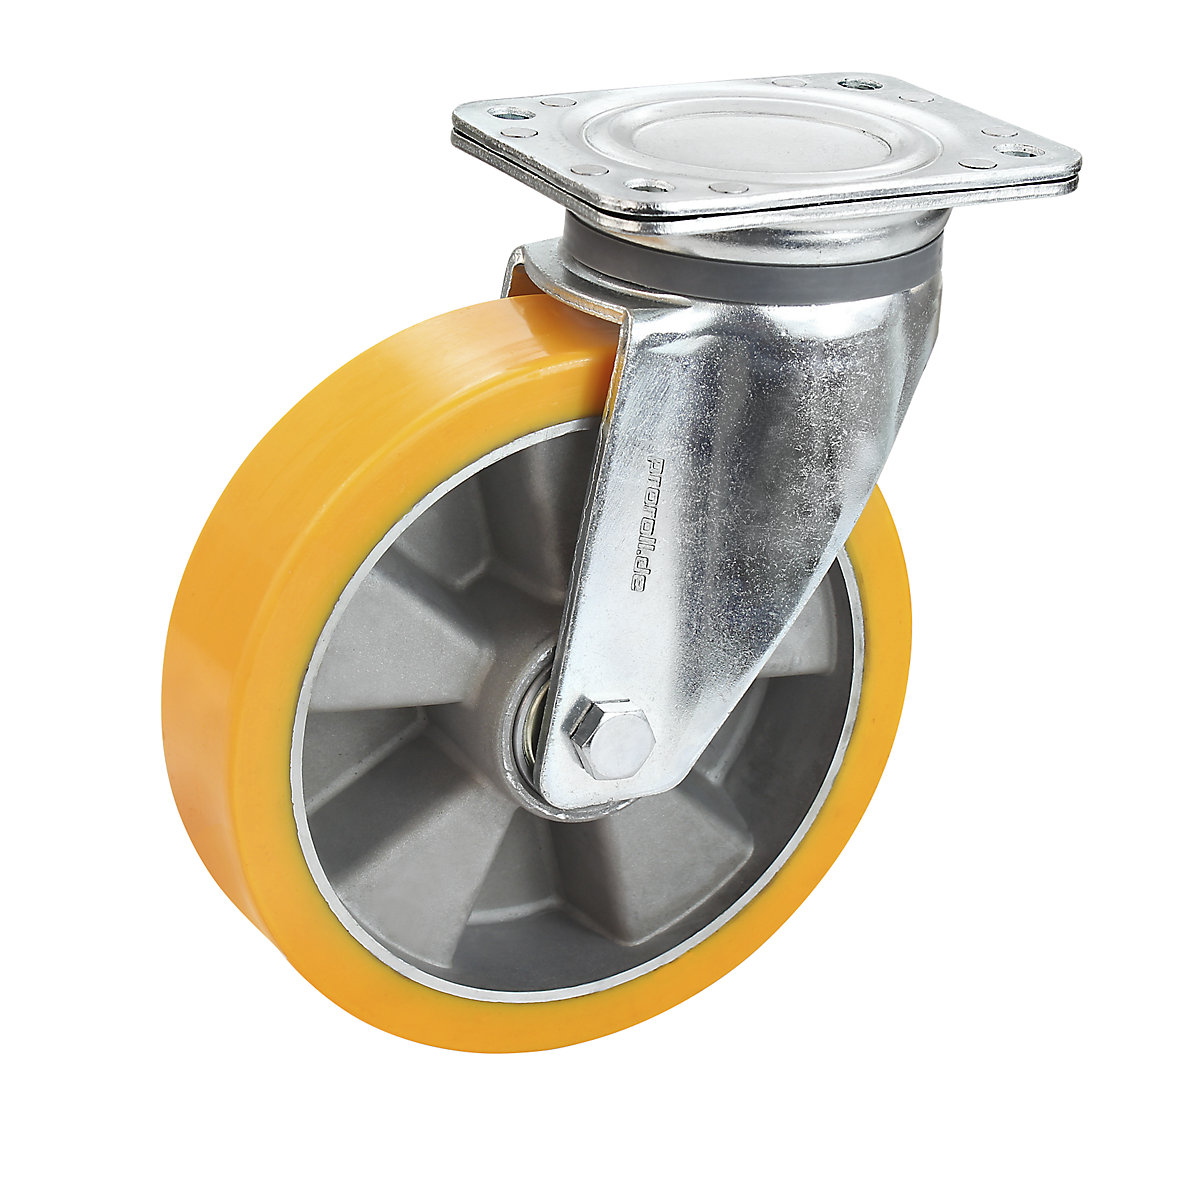 Obruč z PU na hliníkovom disku – Proroll, Ø x šírka kolesa 125 x 40 mm, otočné koliesko-4